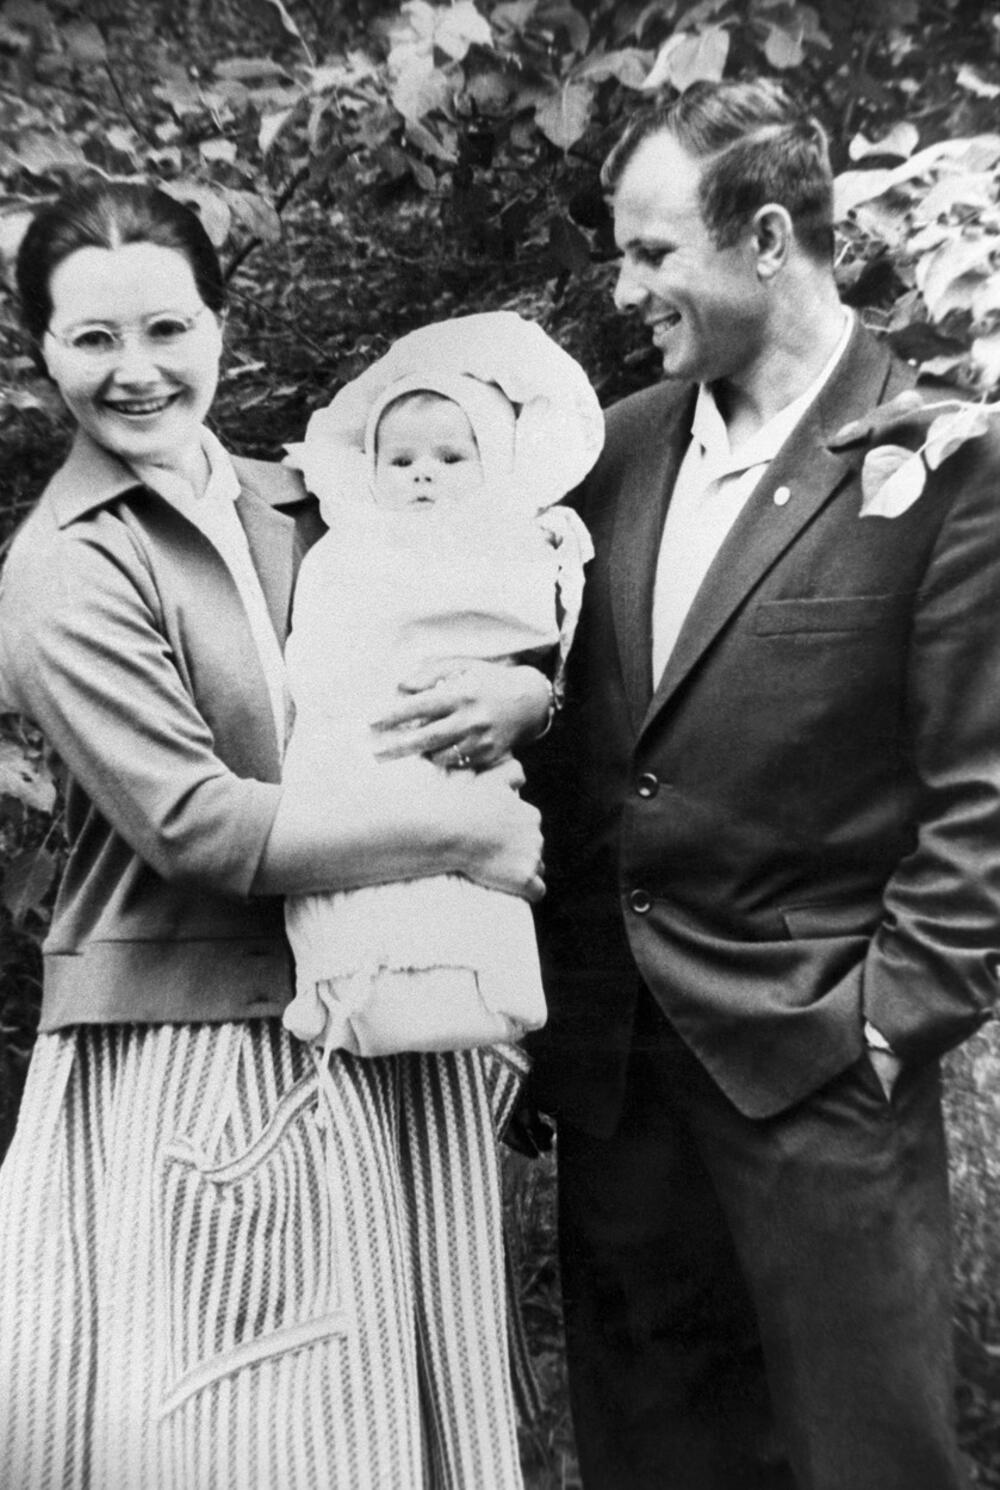 Гагарин с семьей фото